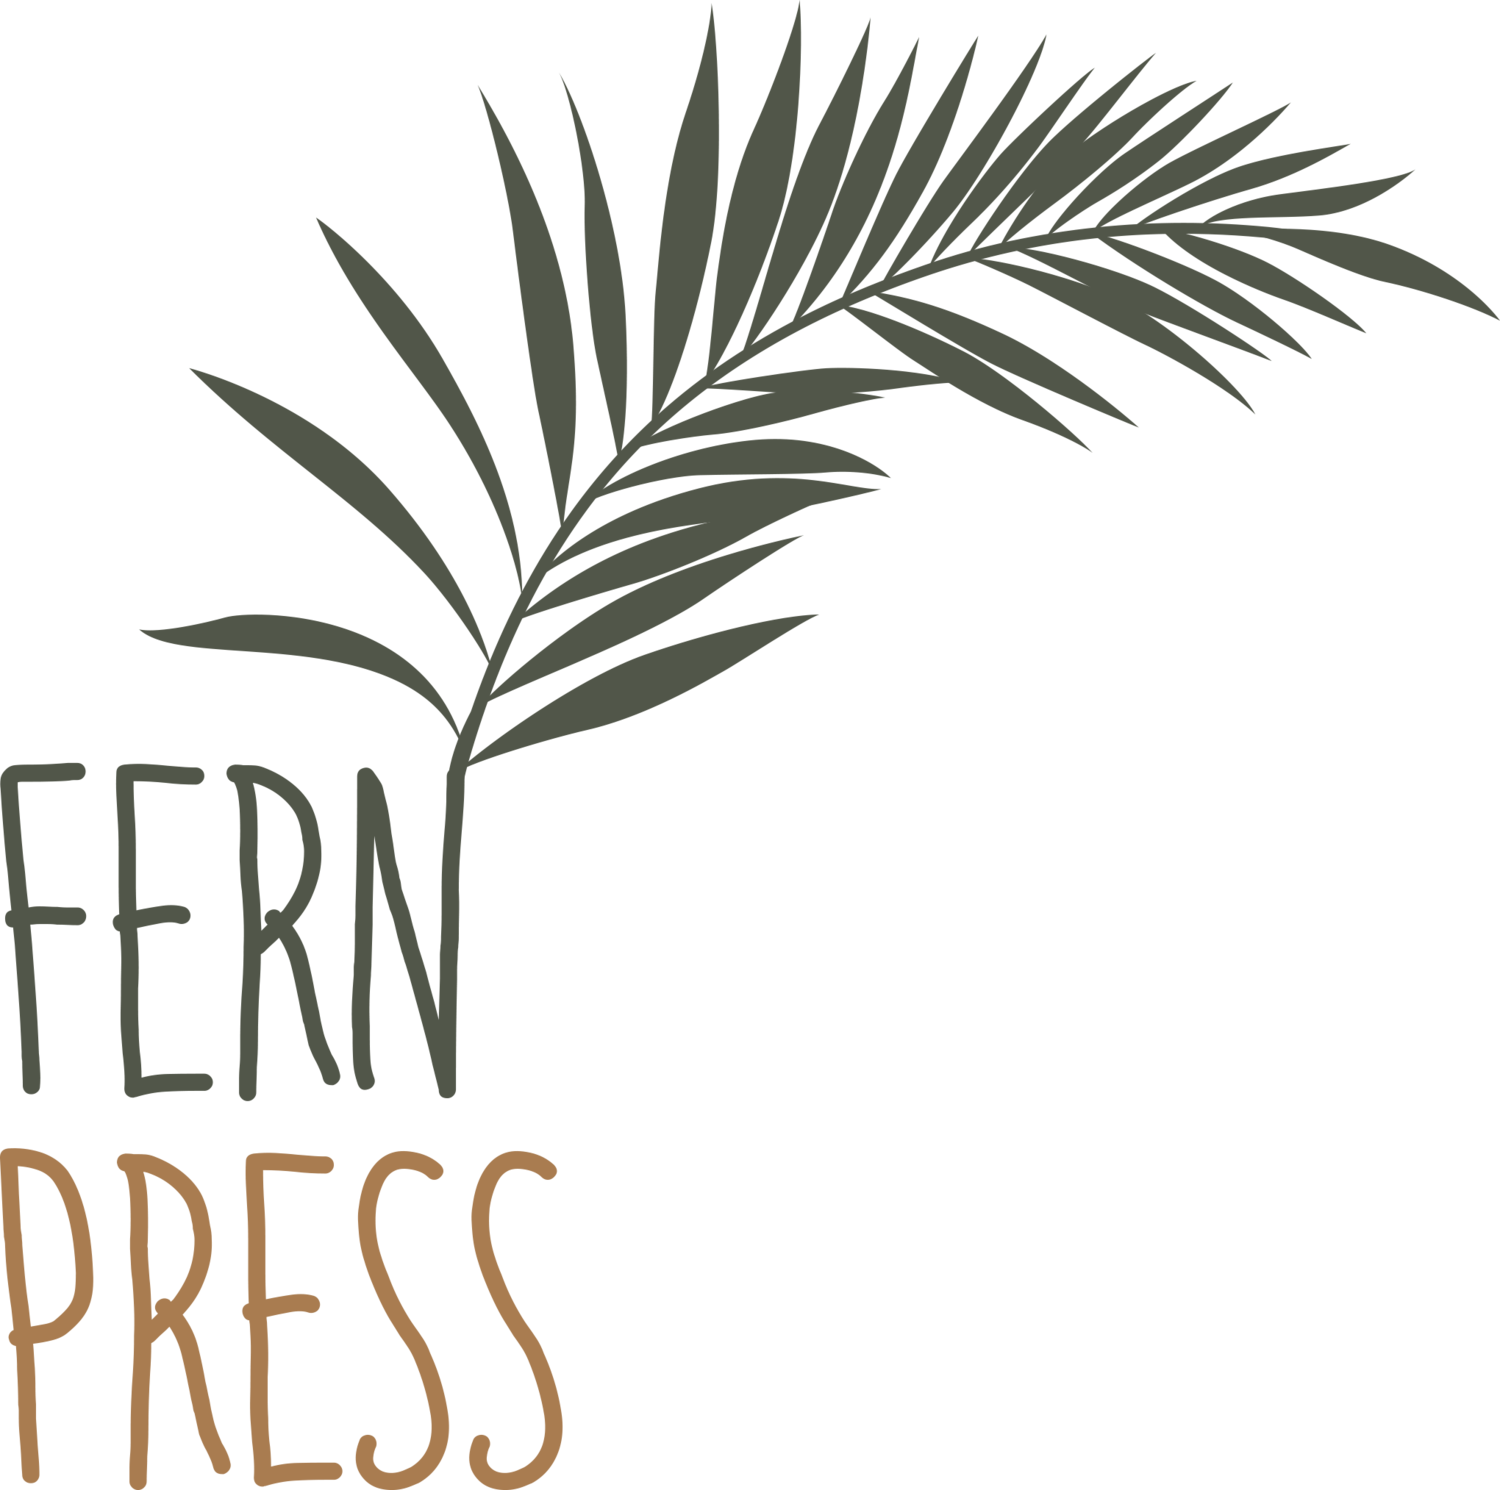 Fern Press